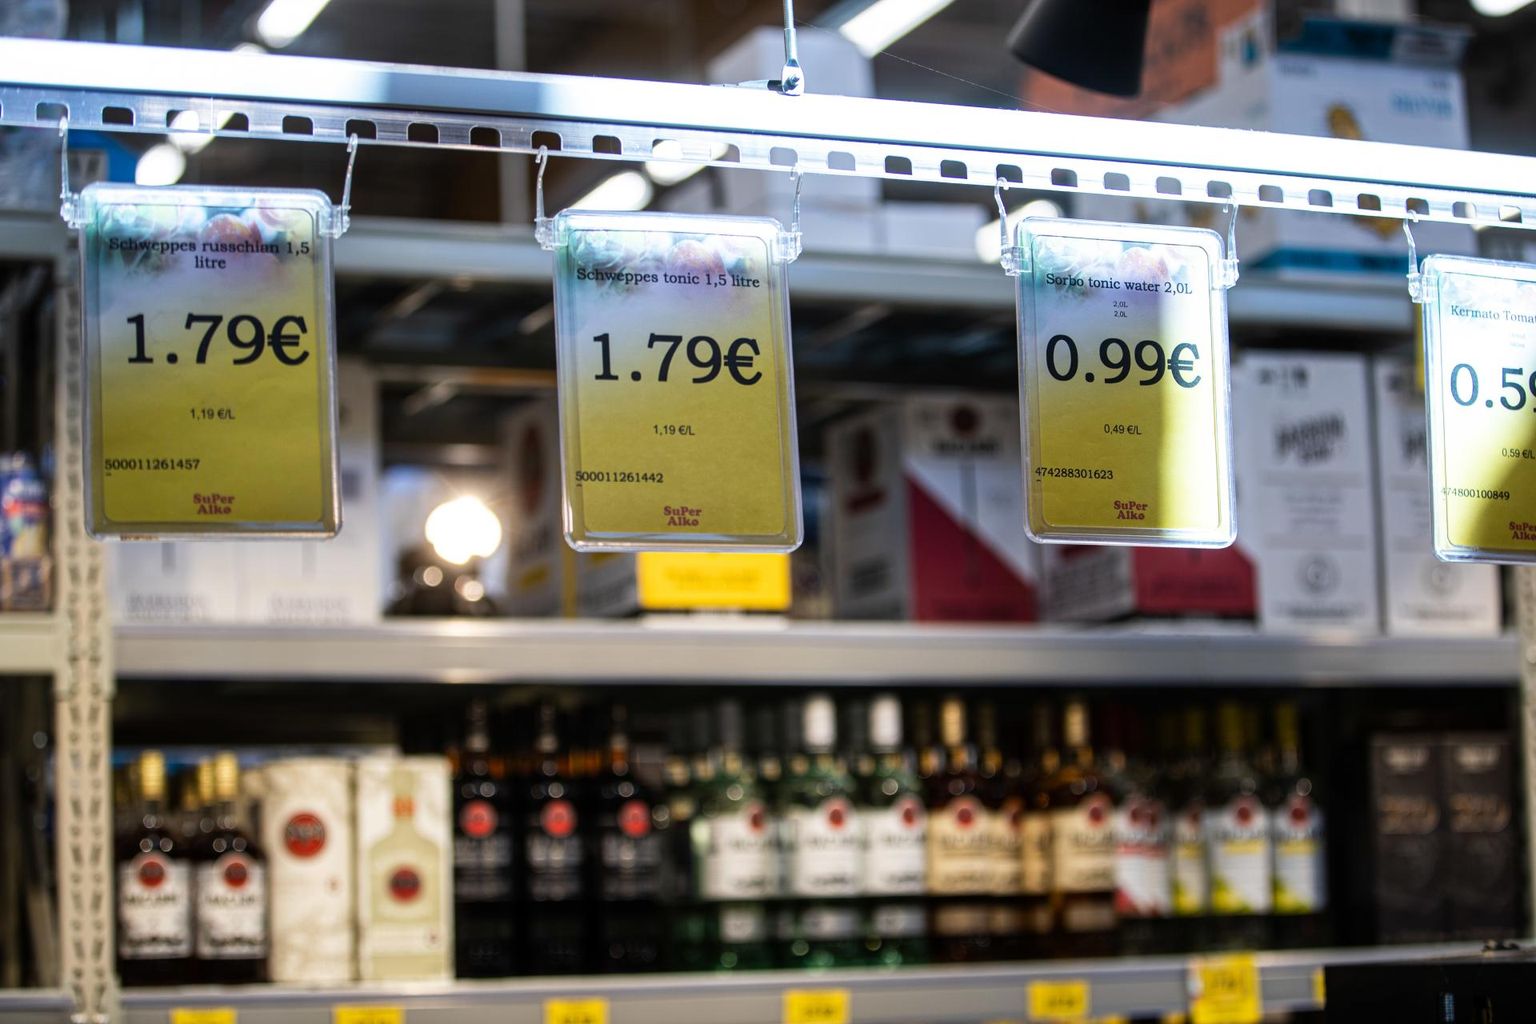 Muutus keskkonnas – alkoholi kättesaadavuses ja hinnas – mõjutas uuringu järgi umbes kahe kolmandiku osas keskmise inimese alkoholitarbimise muutust.